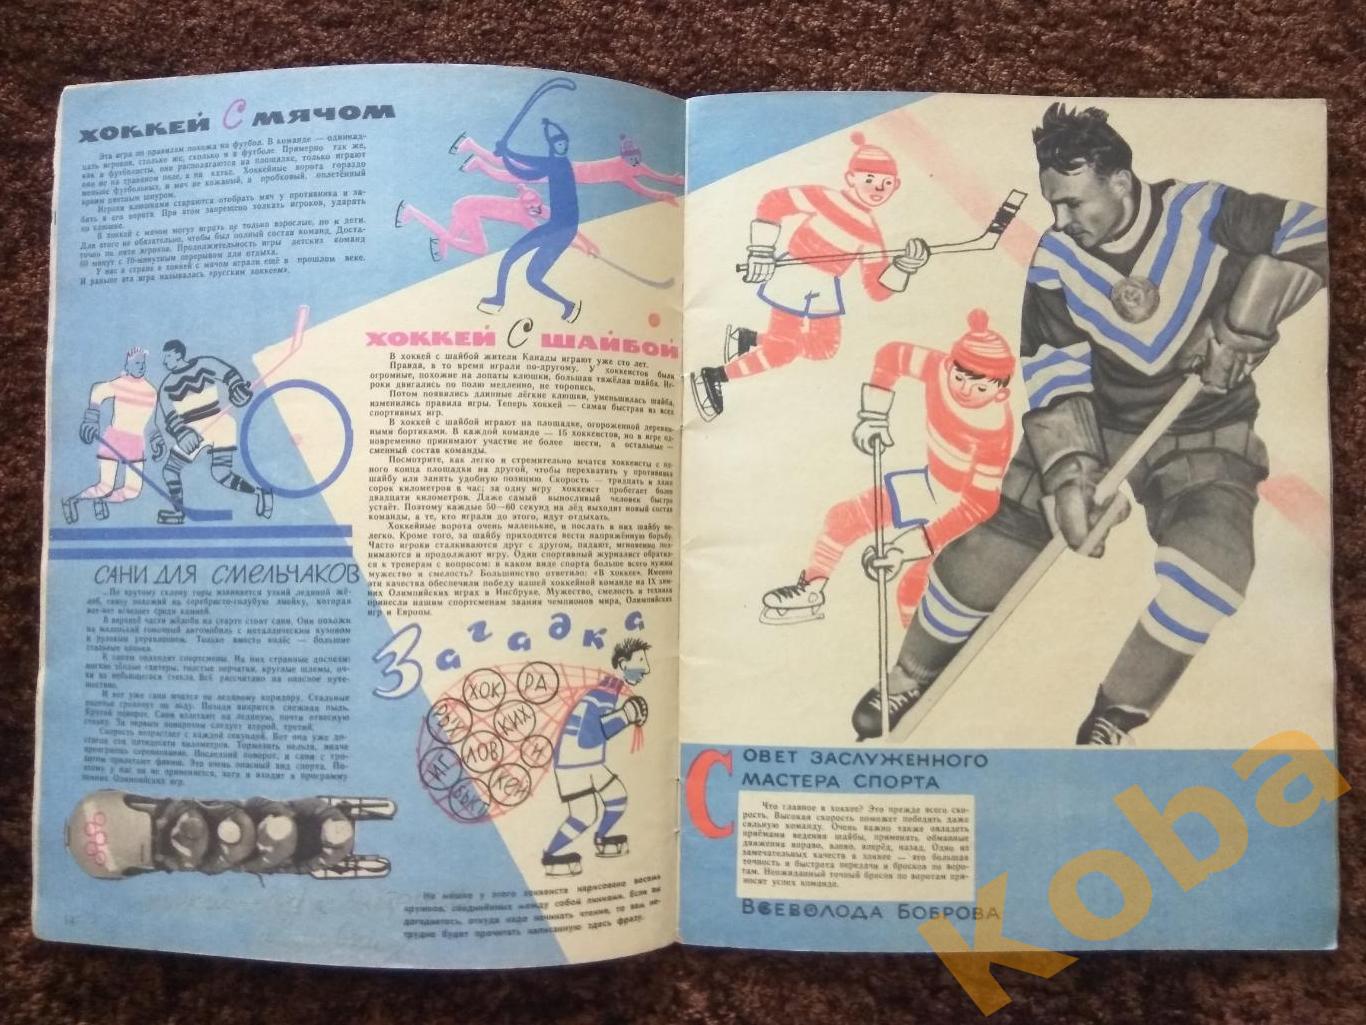 Сила Смелость Сноровка Спортивная энциклопедия для детей 1965 в красках 3